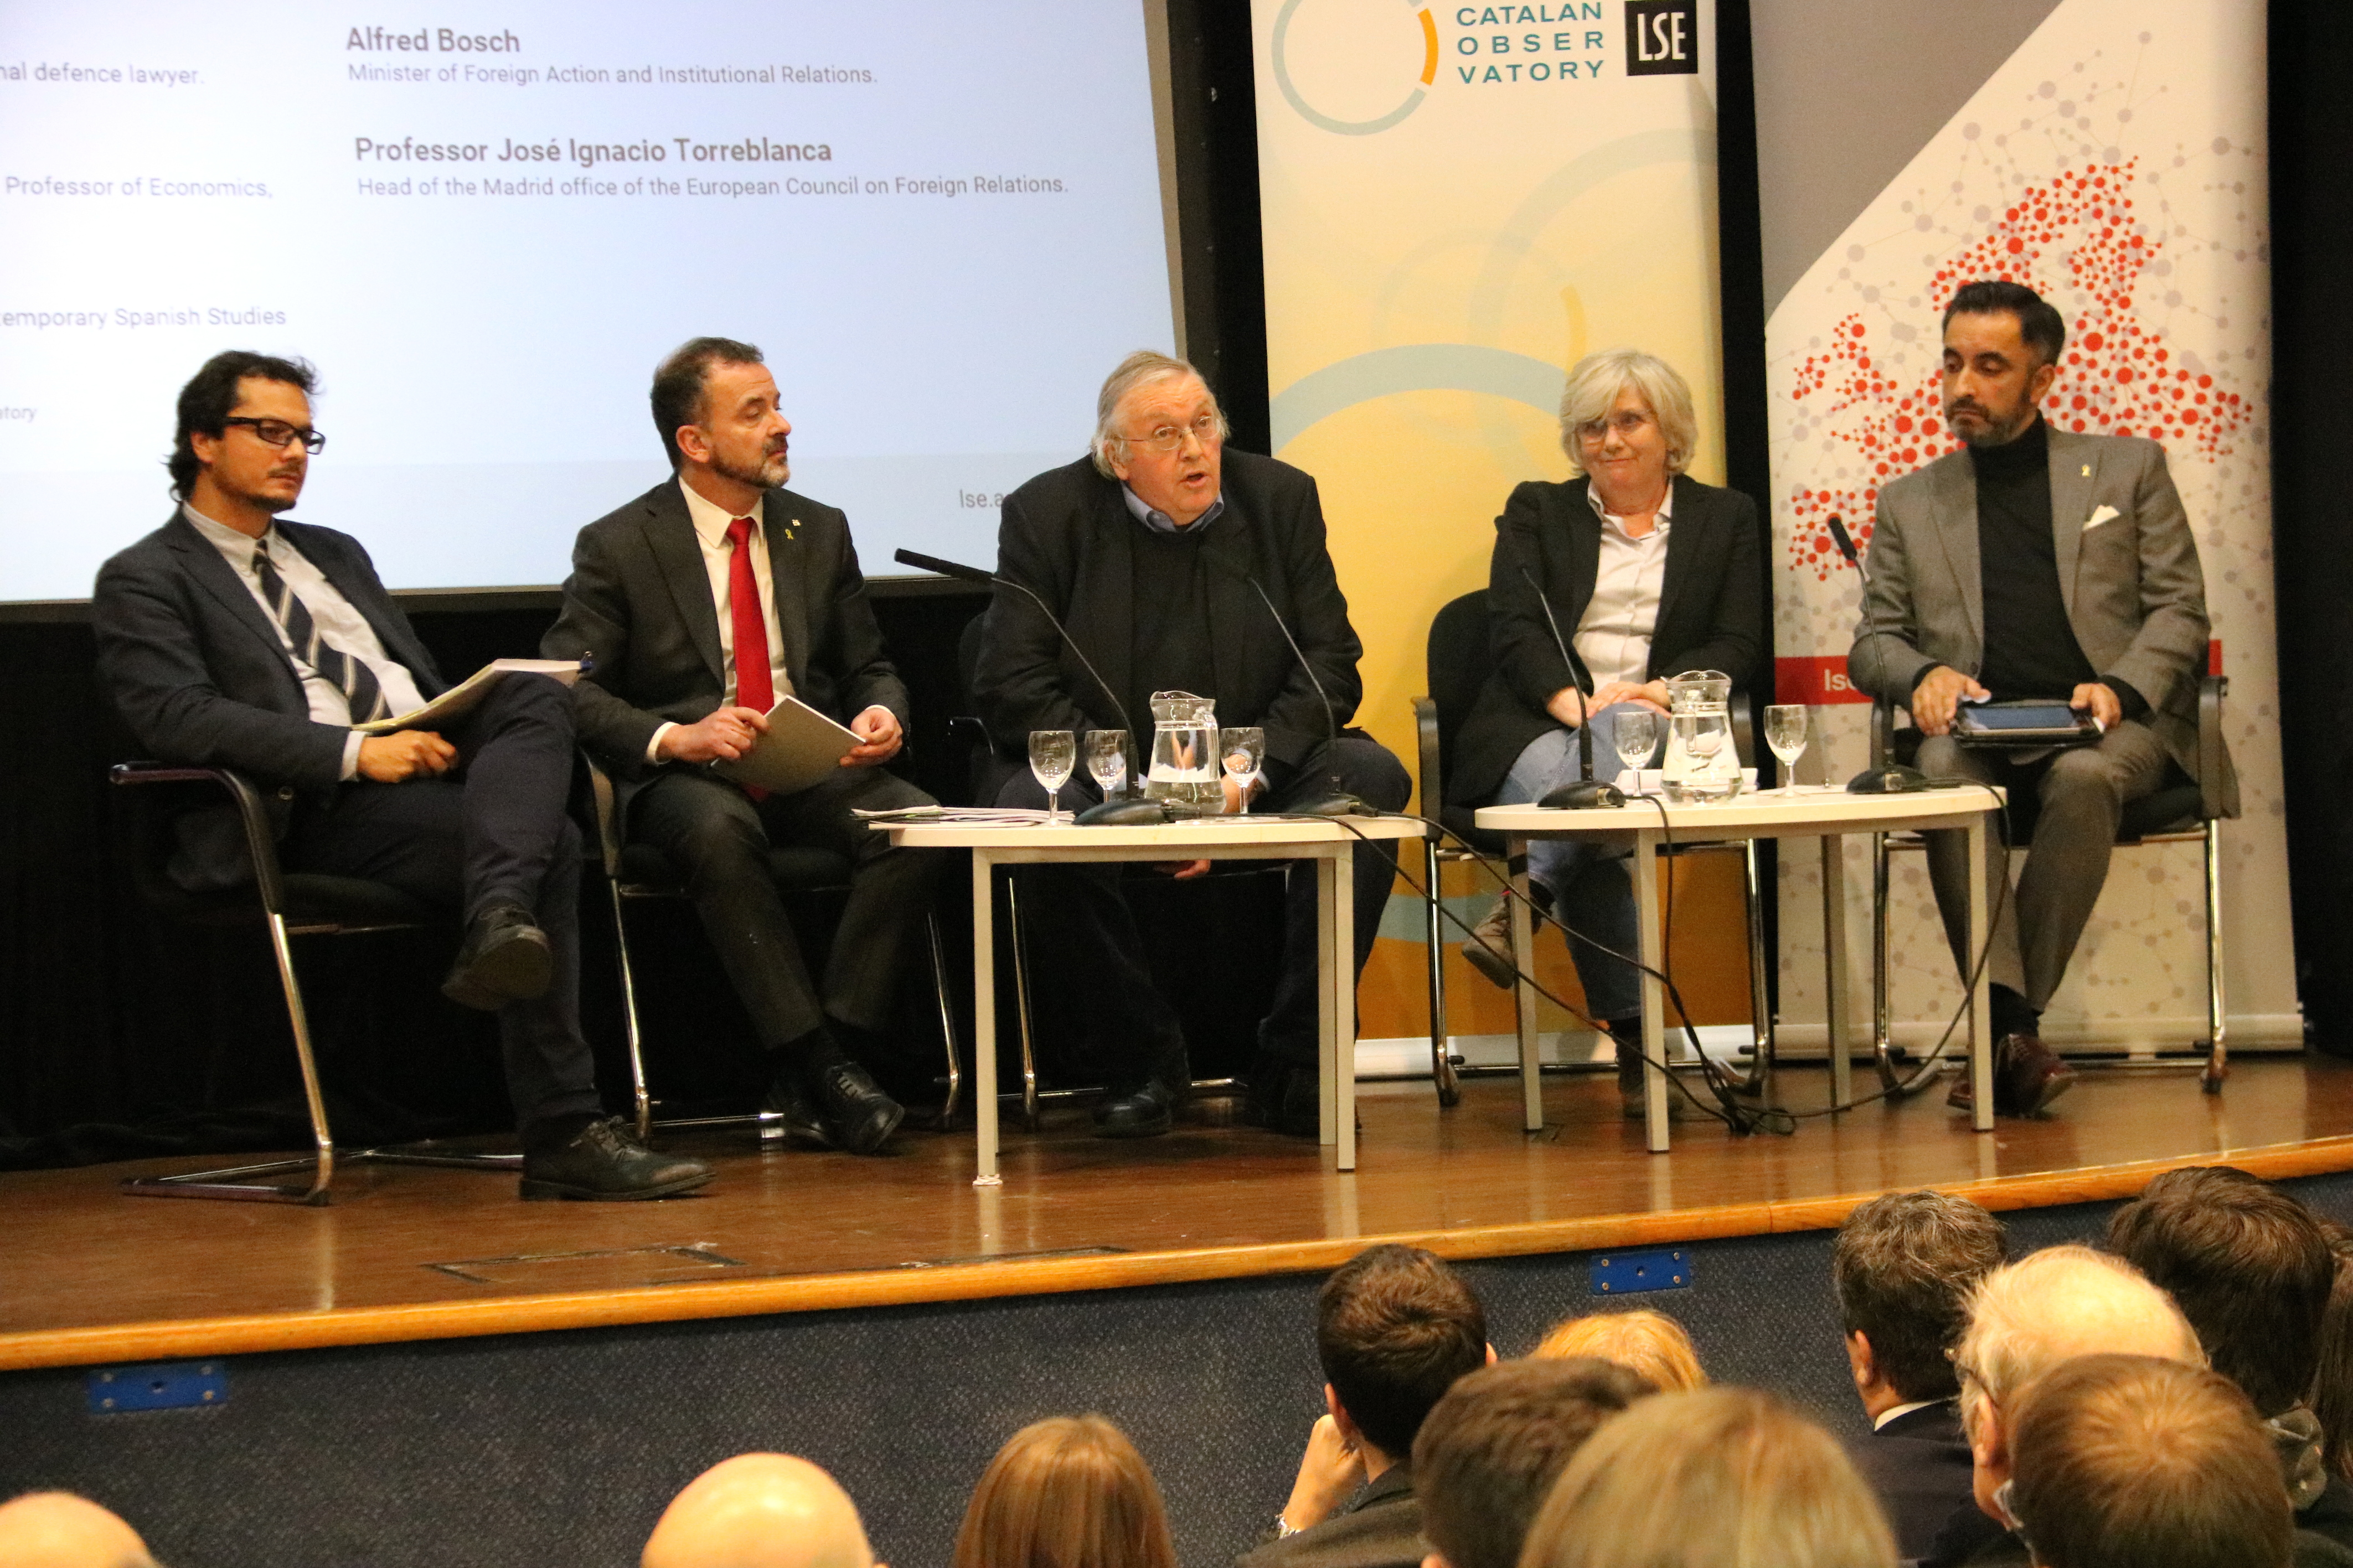 D'esquerra a dreta: Nacho Corredor, Alfred Bosch, Paul Preston, Clara Ponsatí, Aamer Anwar, ahir a la LSE (fotografia: ACN).